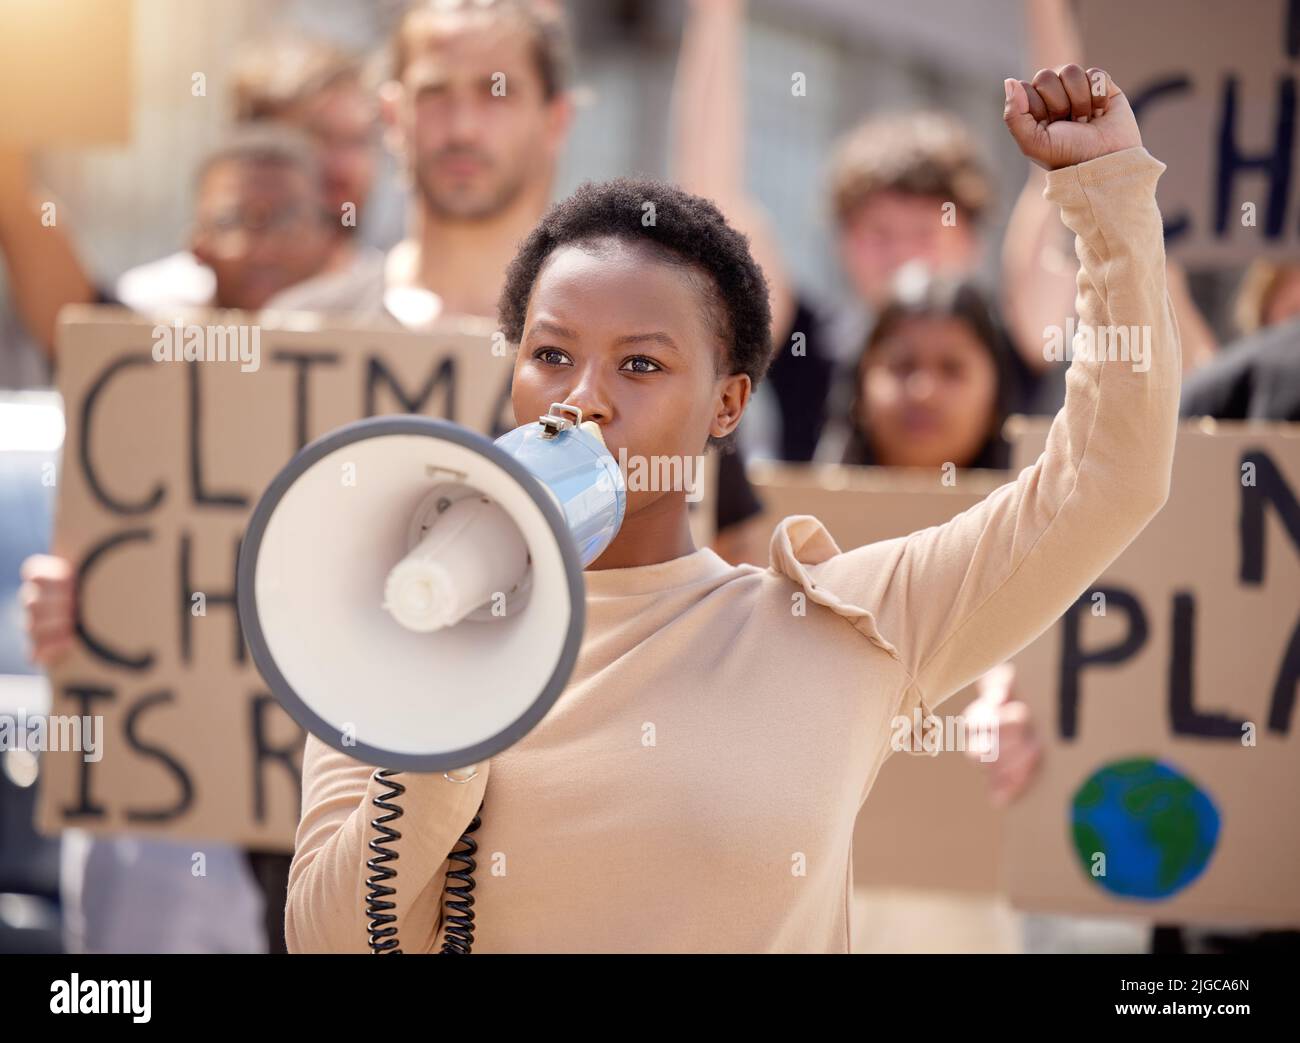 Sie werden unsere Stimmen hören. Eine junge Frau, die bei einem Protest durch ein Megaphon spricht. Stockfoto